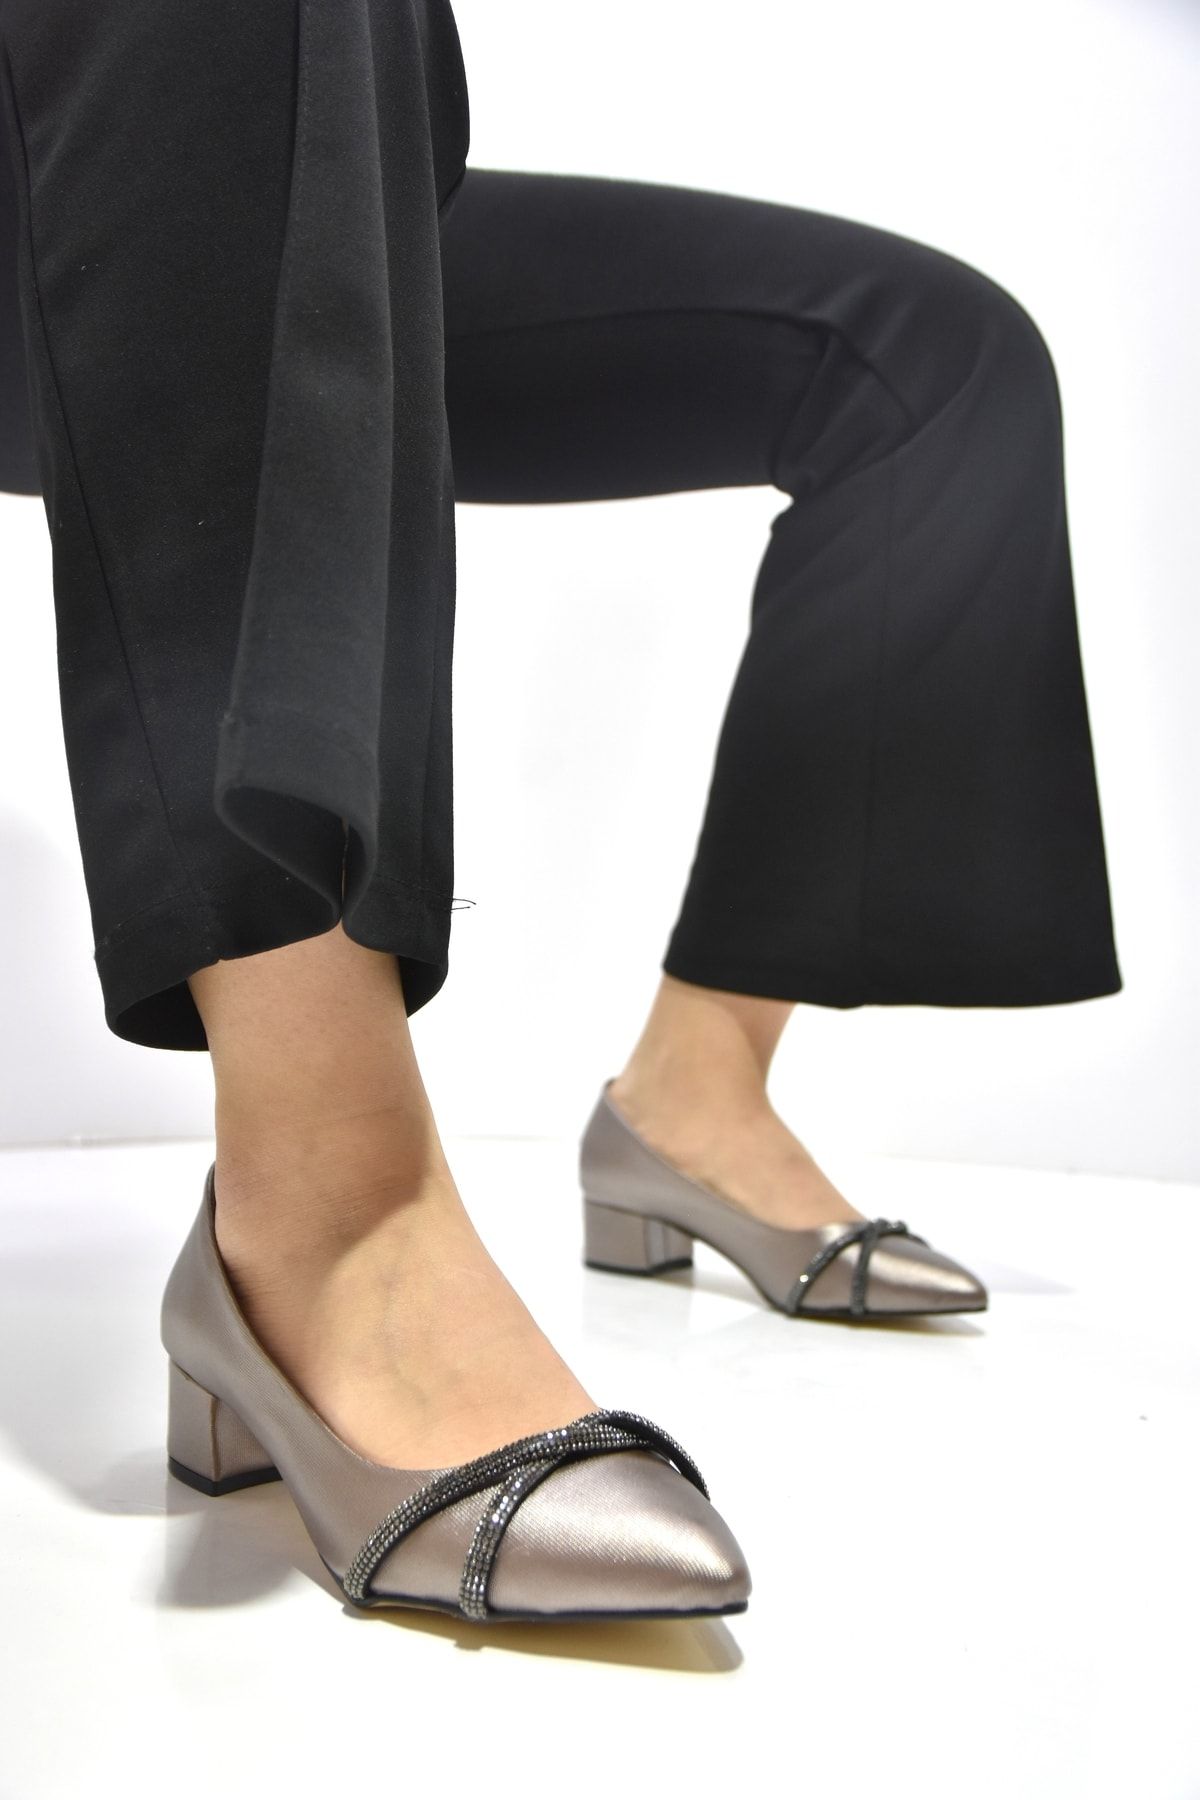 Prego Alçak Topuk Taş Detaylı Kadın Ayakkabı Siyah